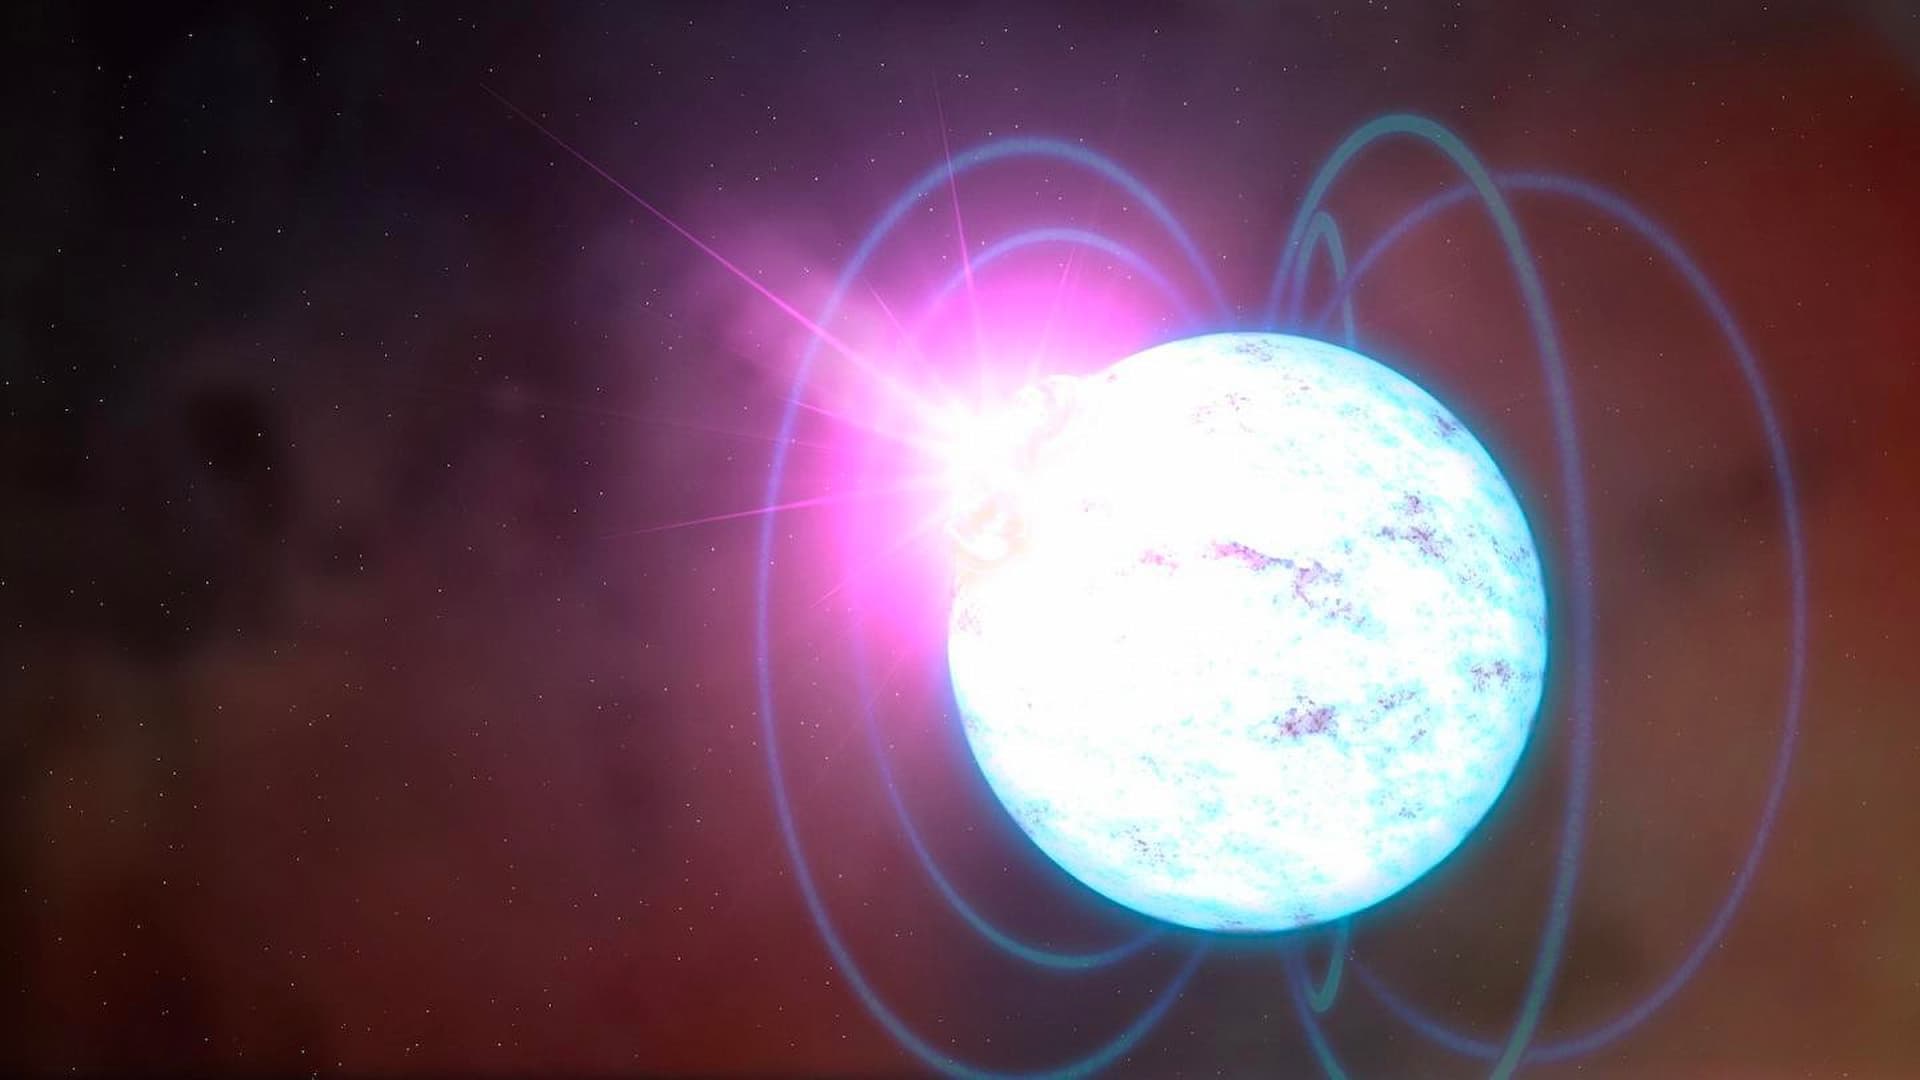 ASI - Atmosfere condensate e campi magnetici ultra forti: IXPE fornisce nuovi indizi sulle caratteristiche delle magnetar